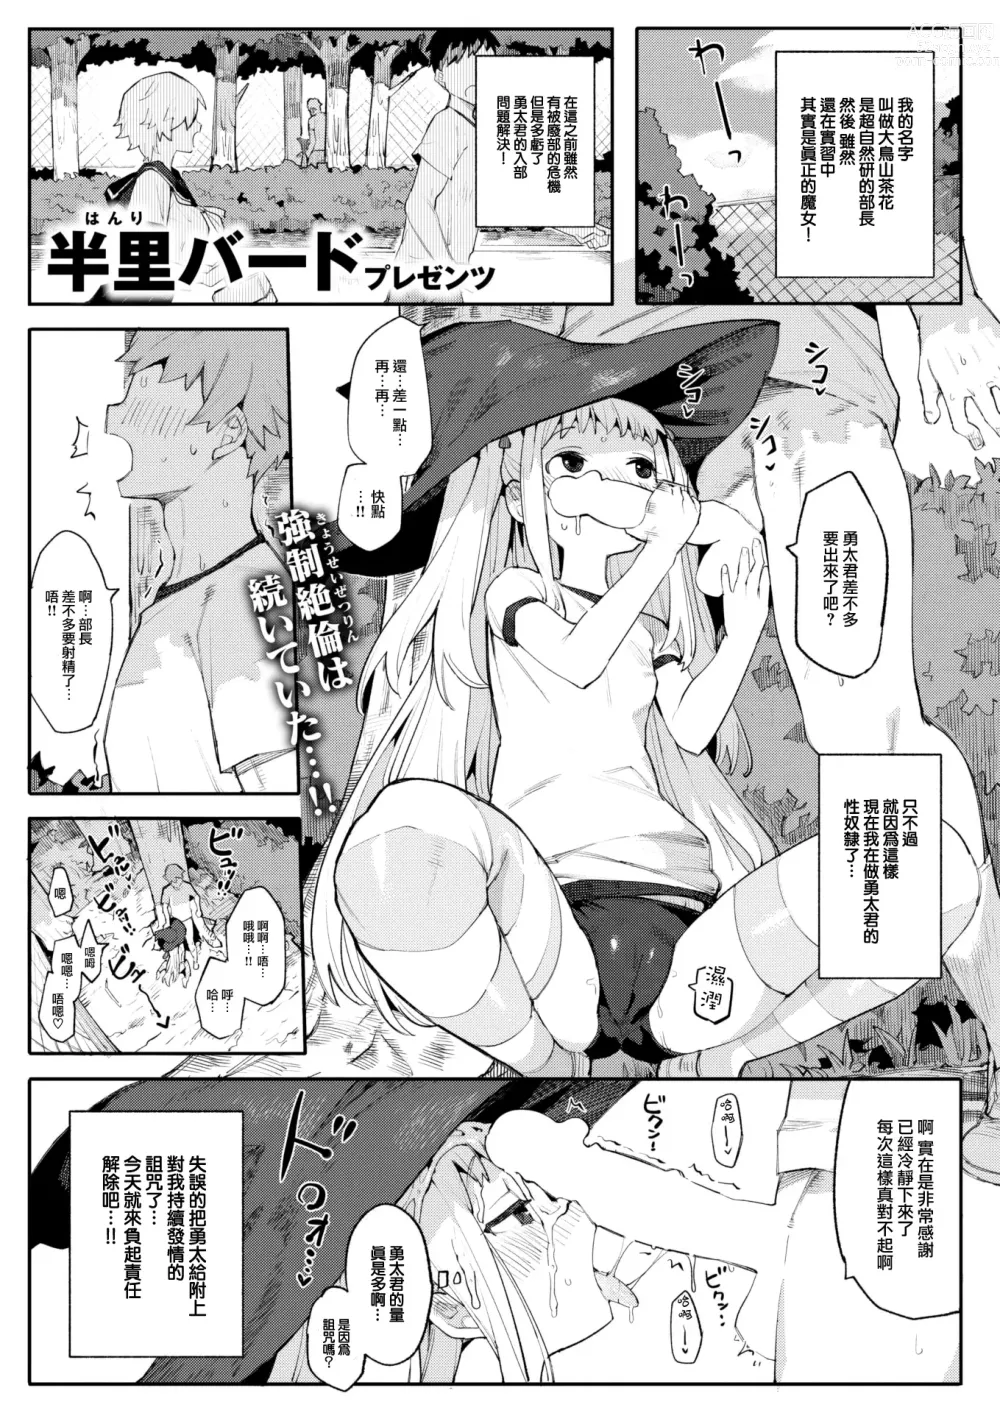 Page 3 of manga Majo wa hoshikute shikata ga nai!